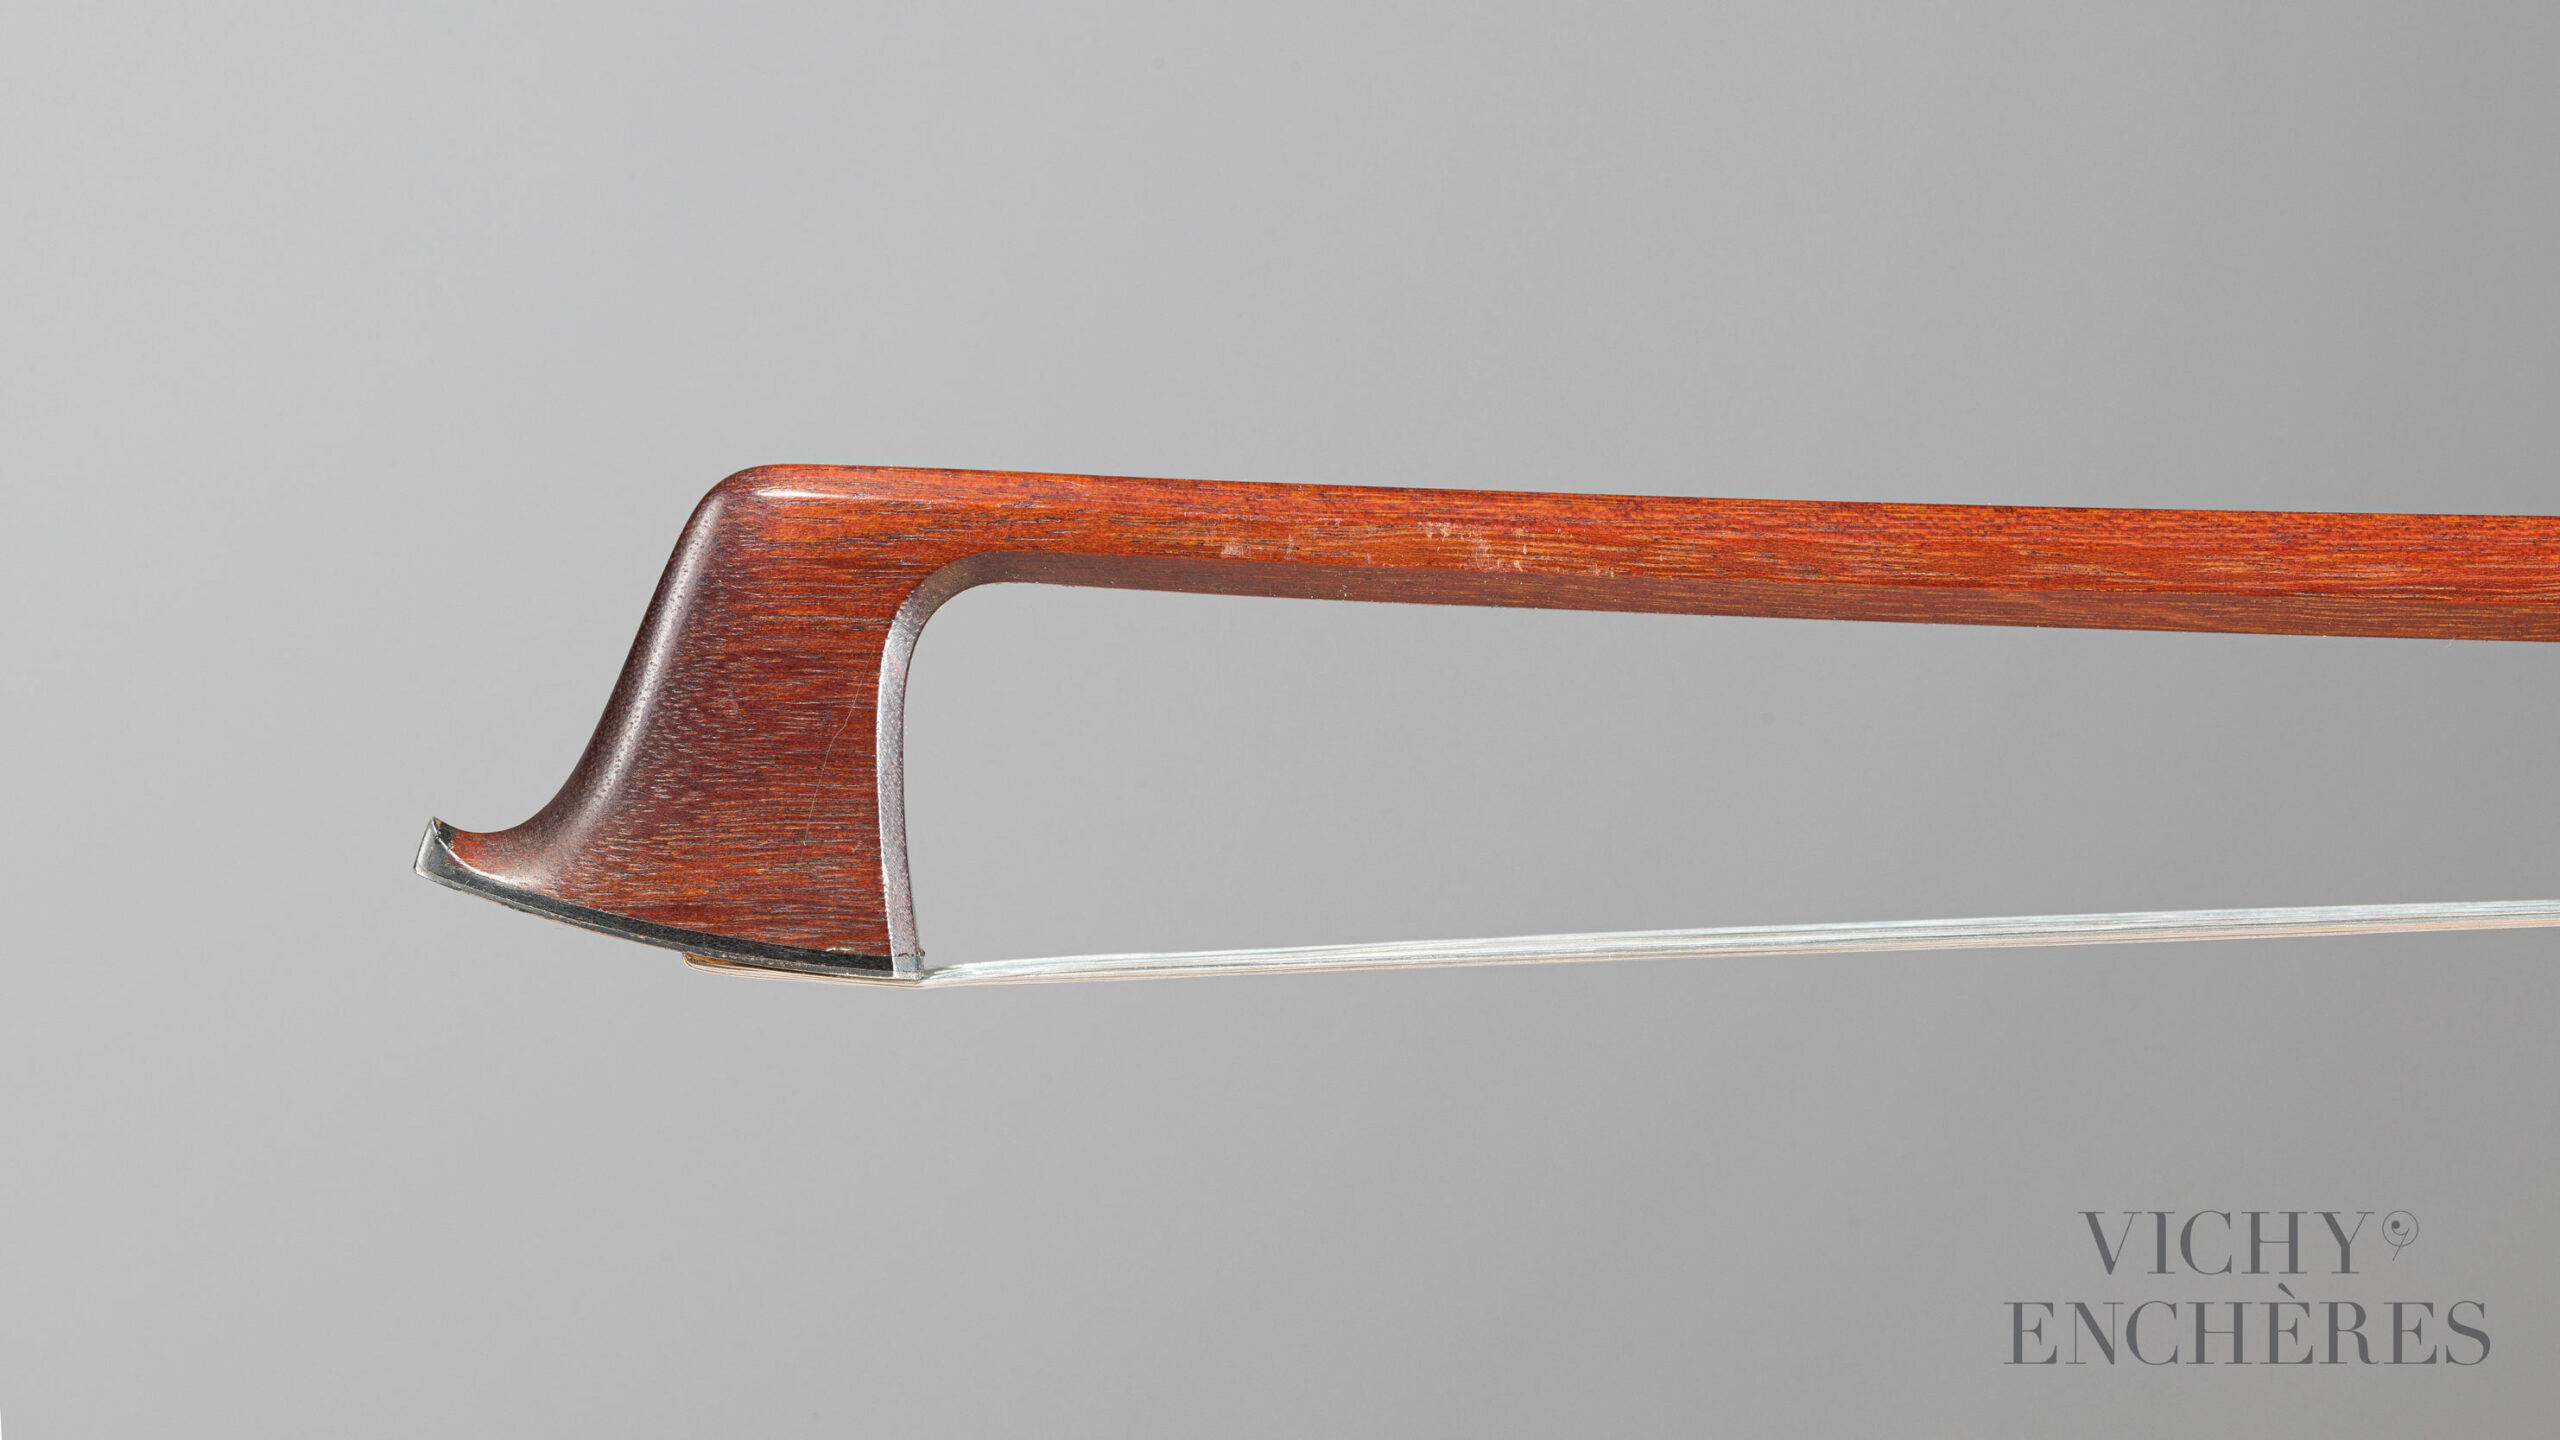 Archet de violon de Sydney YEOMAN Instrument mis en vente par Vichy Enchères le 1er décembre 2022 © Christophe Darbelet